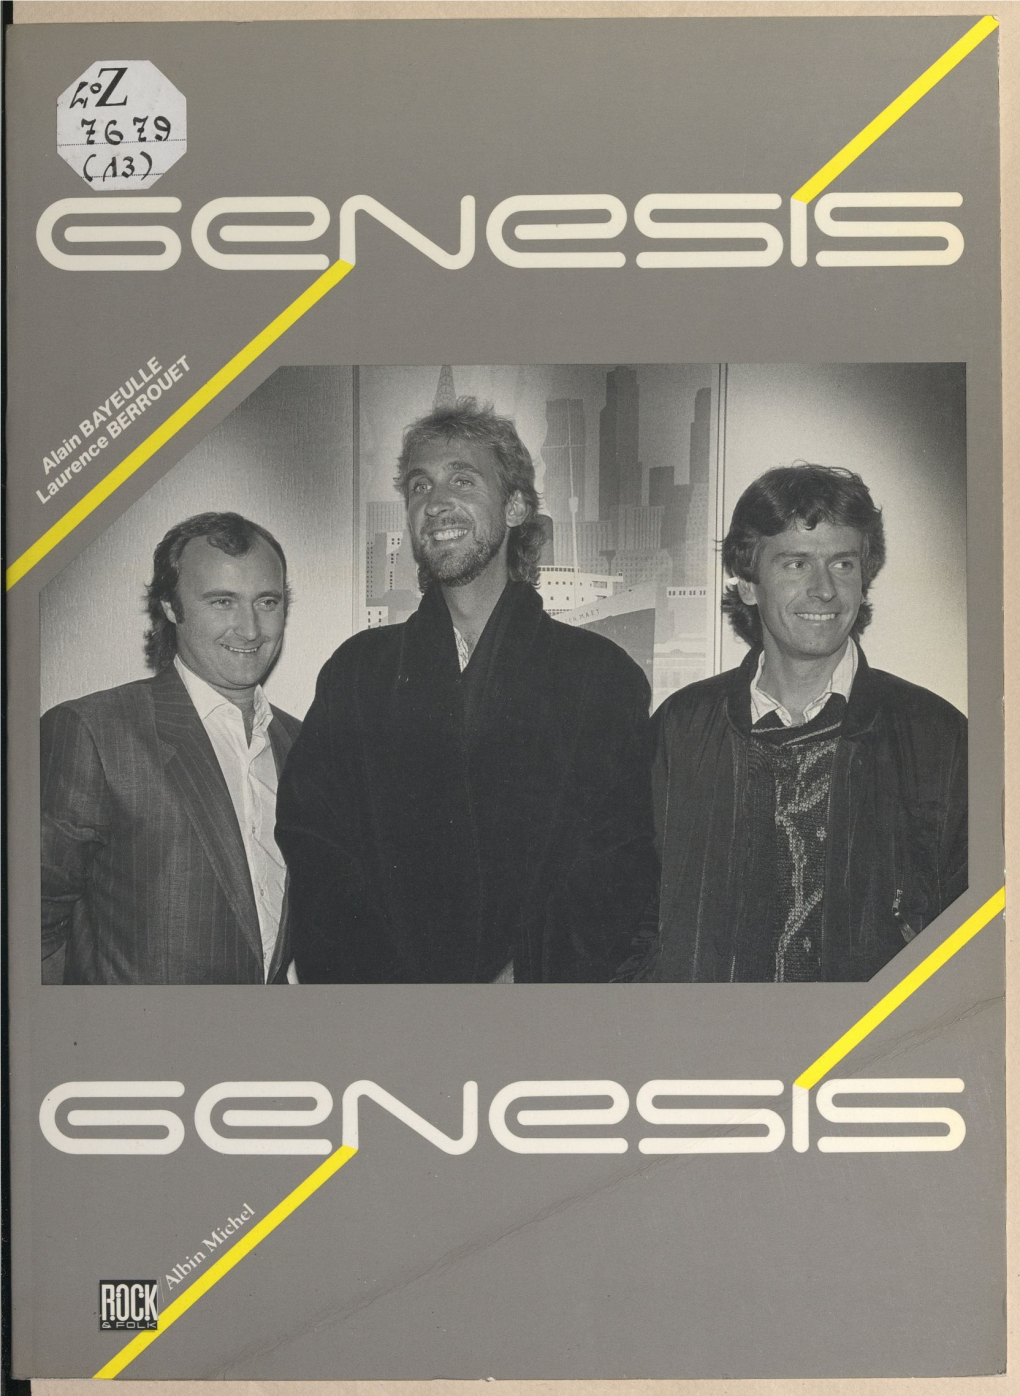 Genesis, 1963-1987